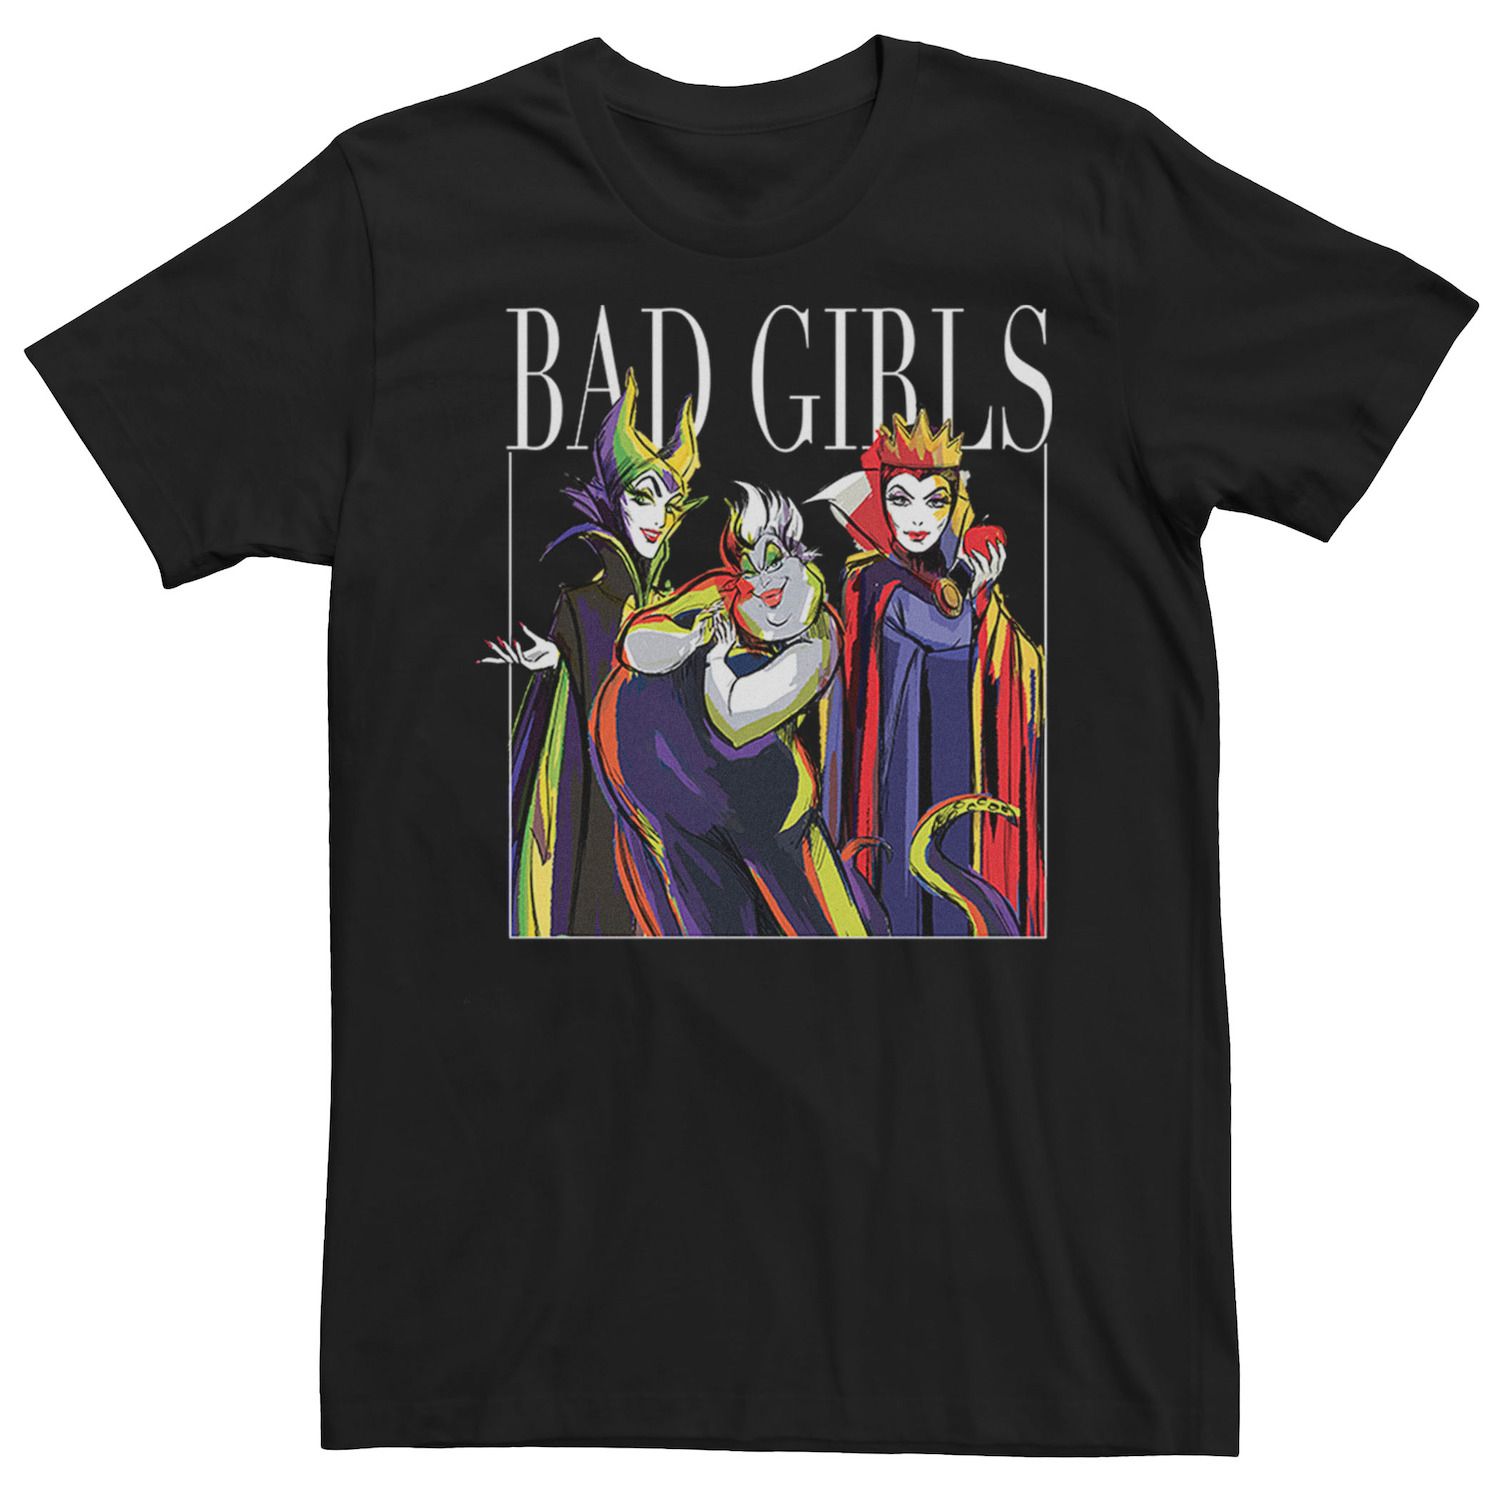 Мужская футболка Disney Villains Bad Girls Licensed Character